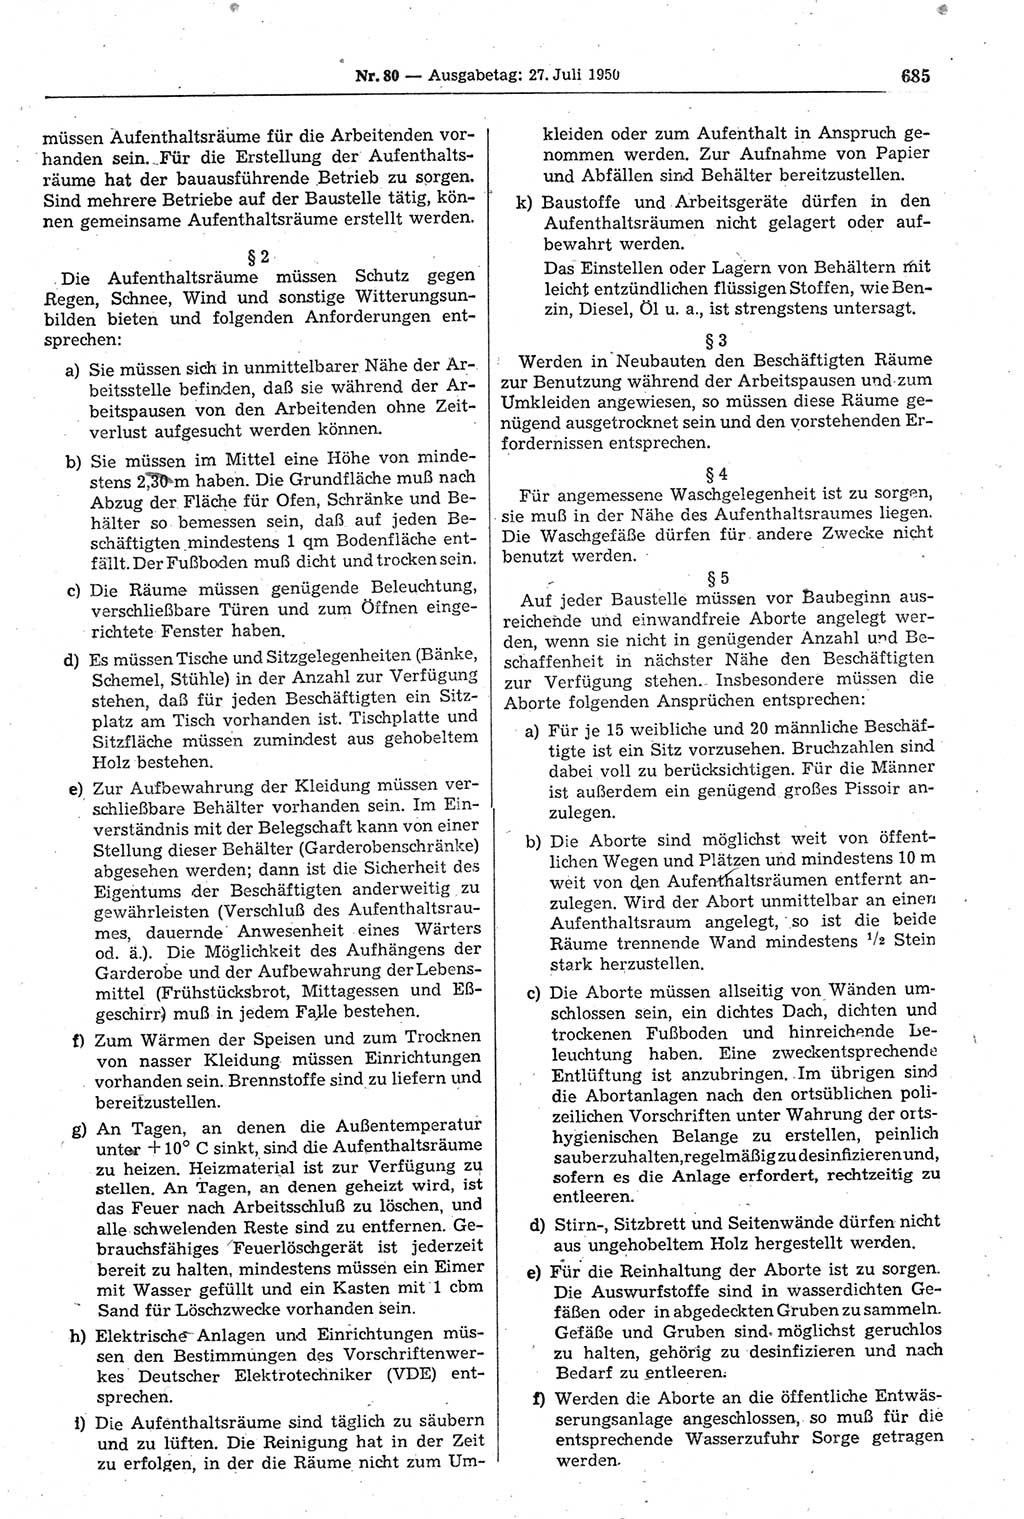 Gesetzblatt (GBl.) der Deutschen Demokratischen Republik (DDR) 1950, Seite 685 (GBl. DDR 1950, S. 685)